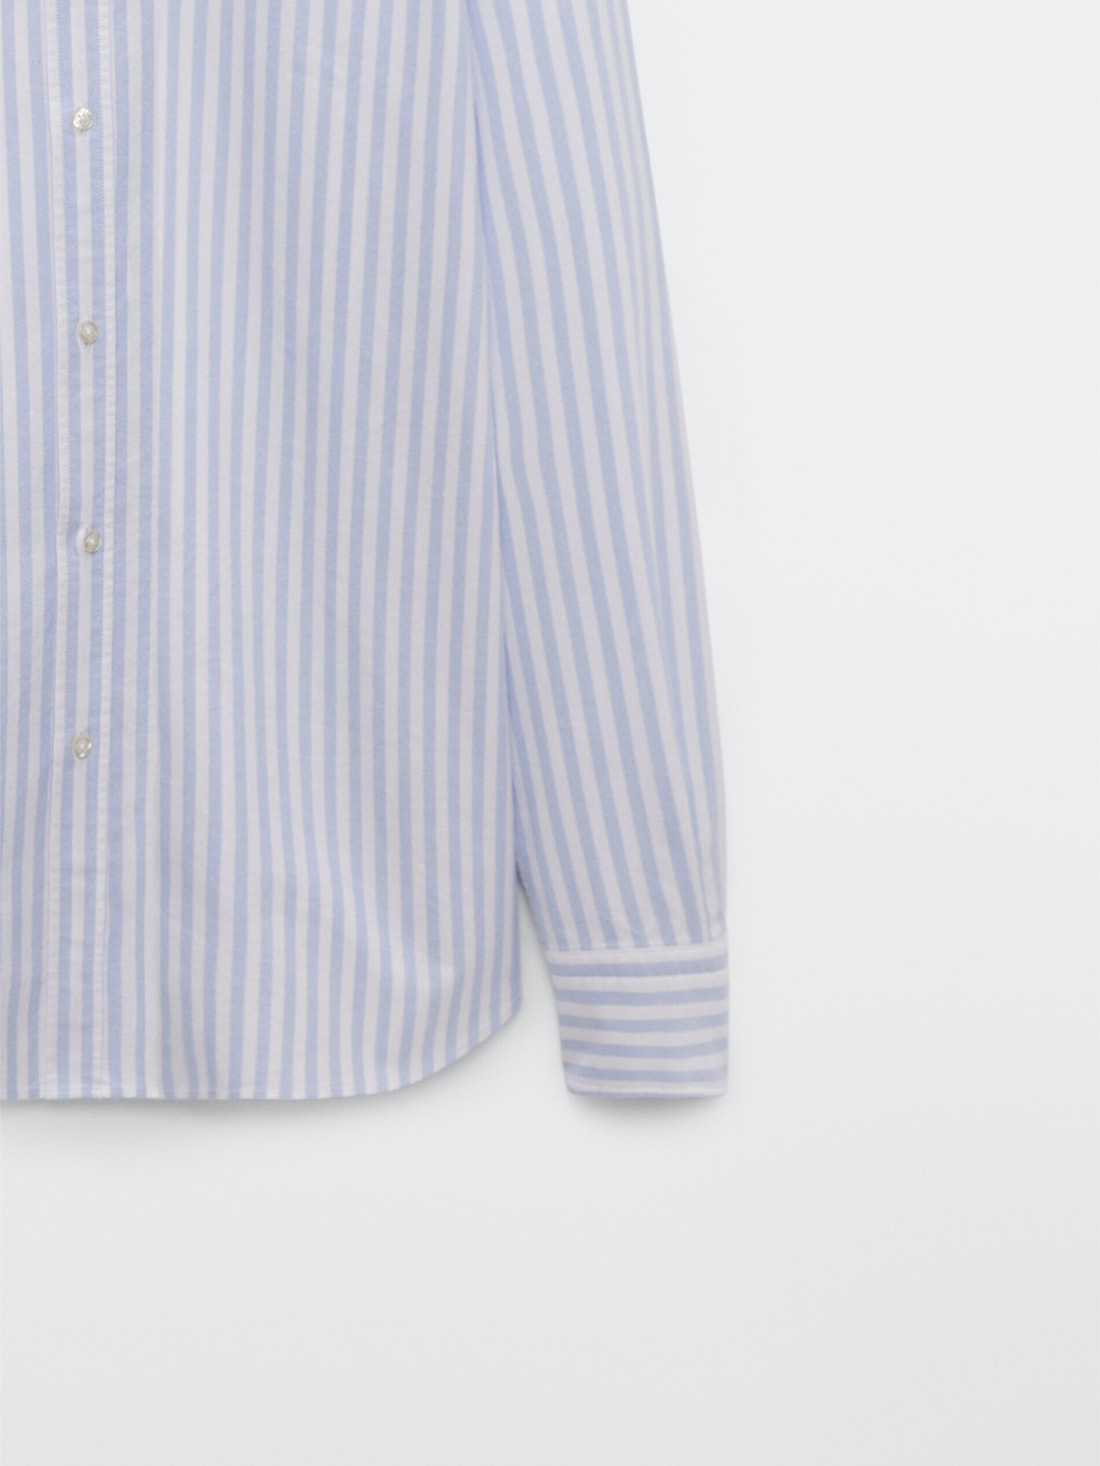 Хлопковая рубашка классического кроя в полоску НЕБЕСНО-ГОЛУБОЙ Massimo Dutti